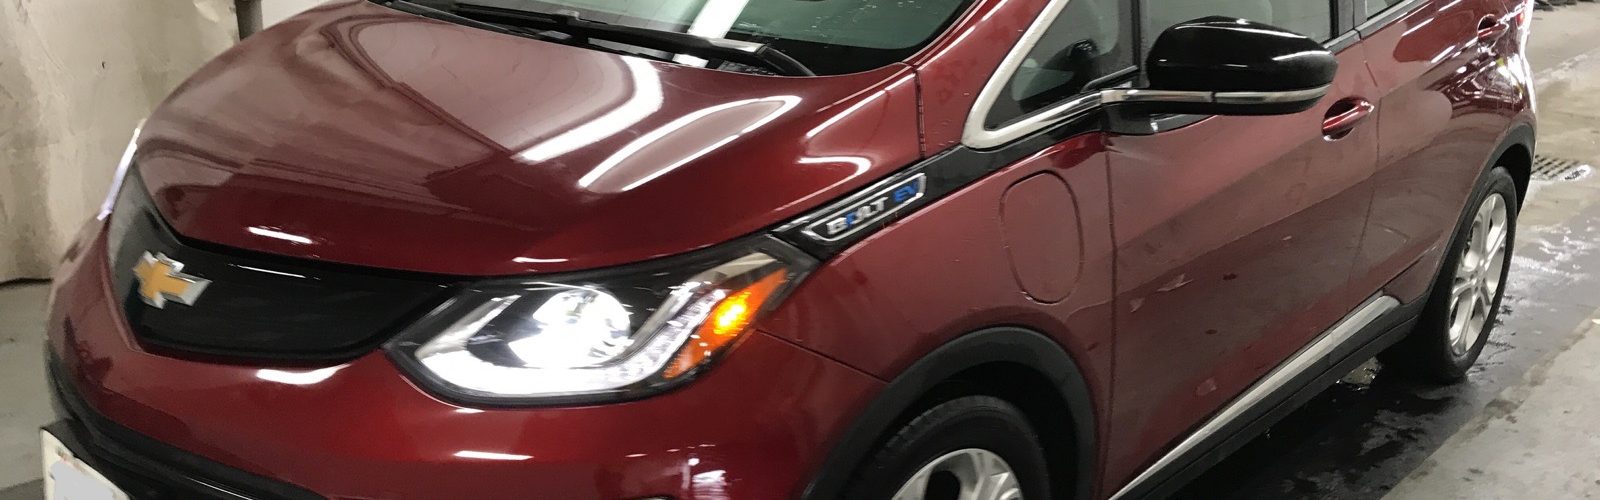 Chevrolet Bolt EV LT 2017 31 563 Km – Seulement 26 500 $ avec la subvention – VENDUE